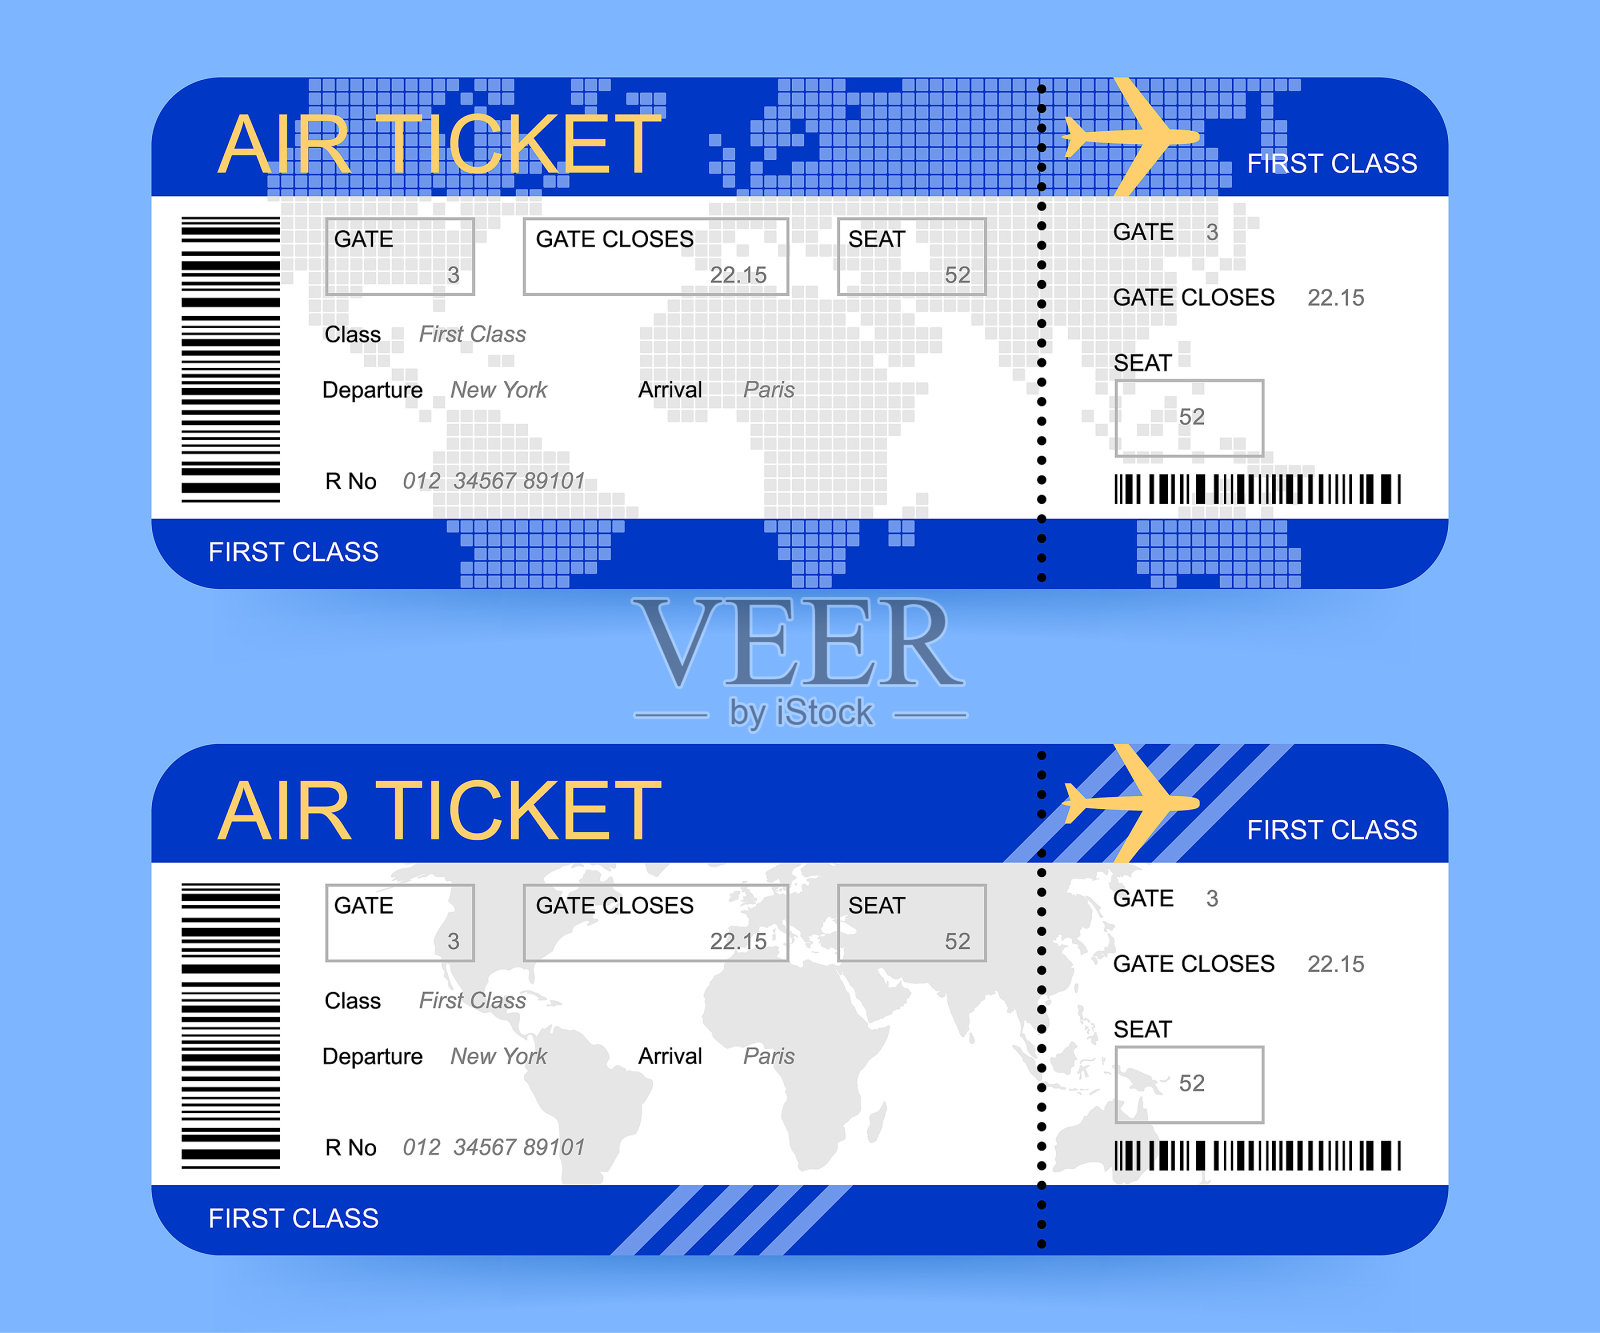 蓝色背景的登机牌或机票设计模板素材